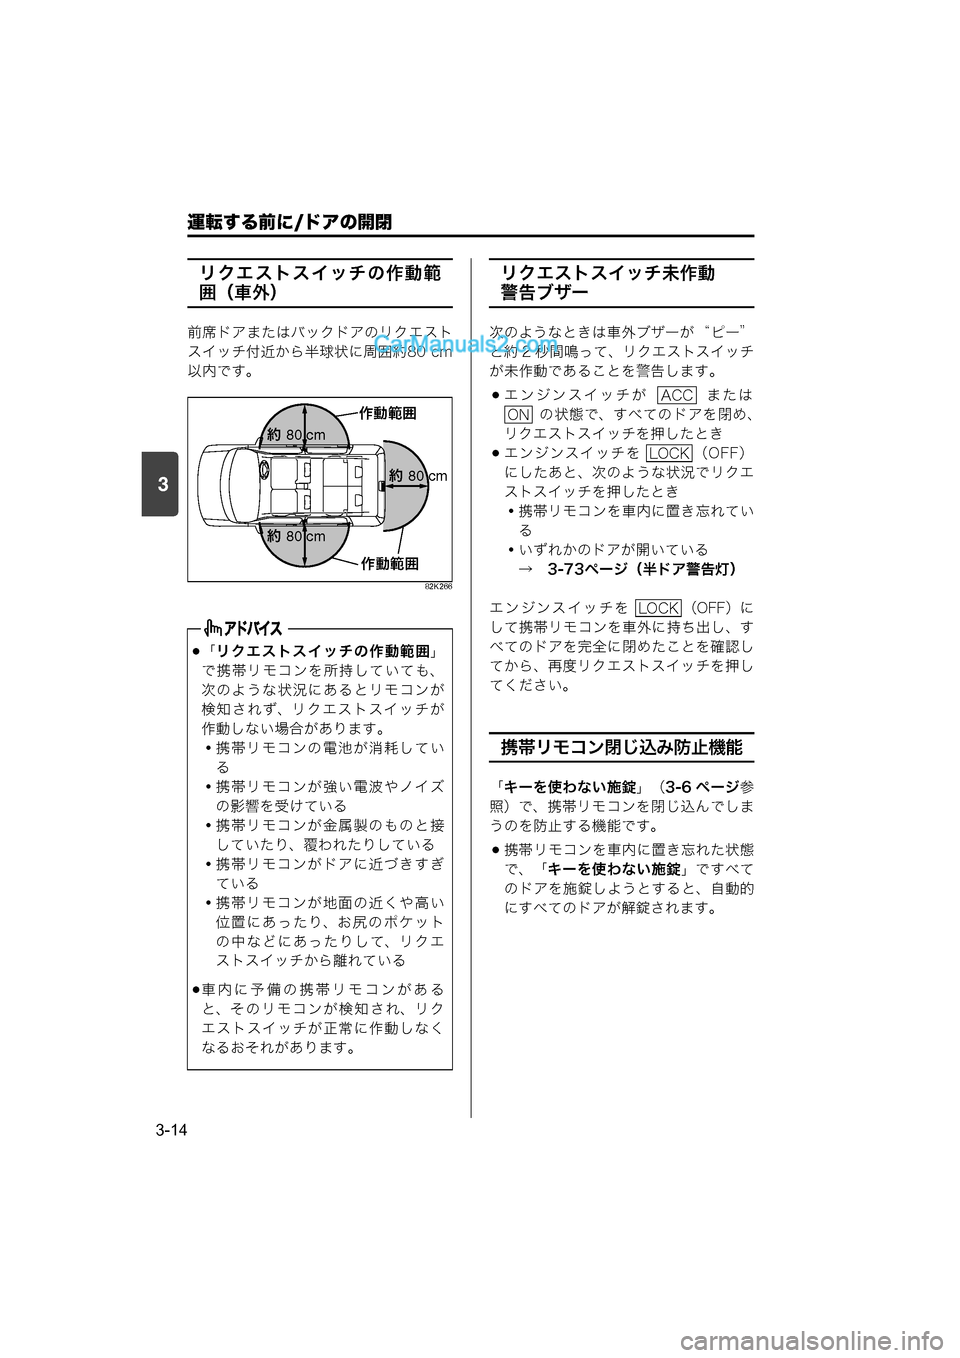 MAZDA MODEL CARROL 2015  取扱説明書 (キャロル) (in Japanese) 運転する前に/ドアの開閉
3-14
3
リクエストスイッチの作動範
囲（車外）
前席ドアまたはバックドアのリクエスト
スイッチ付近から半球状に周囲約80